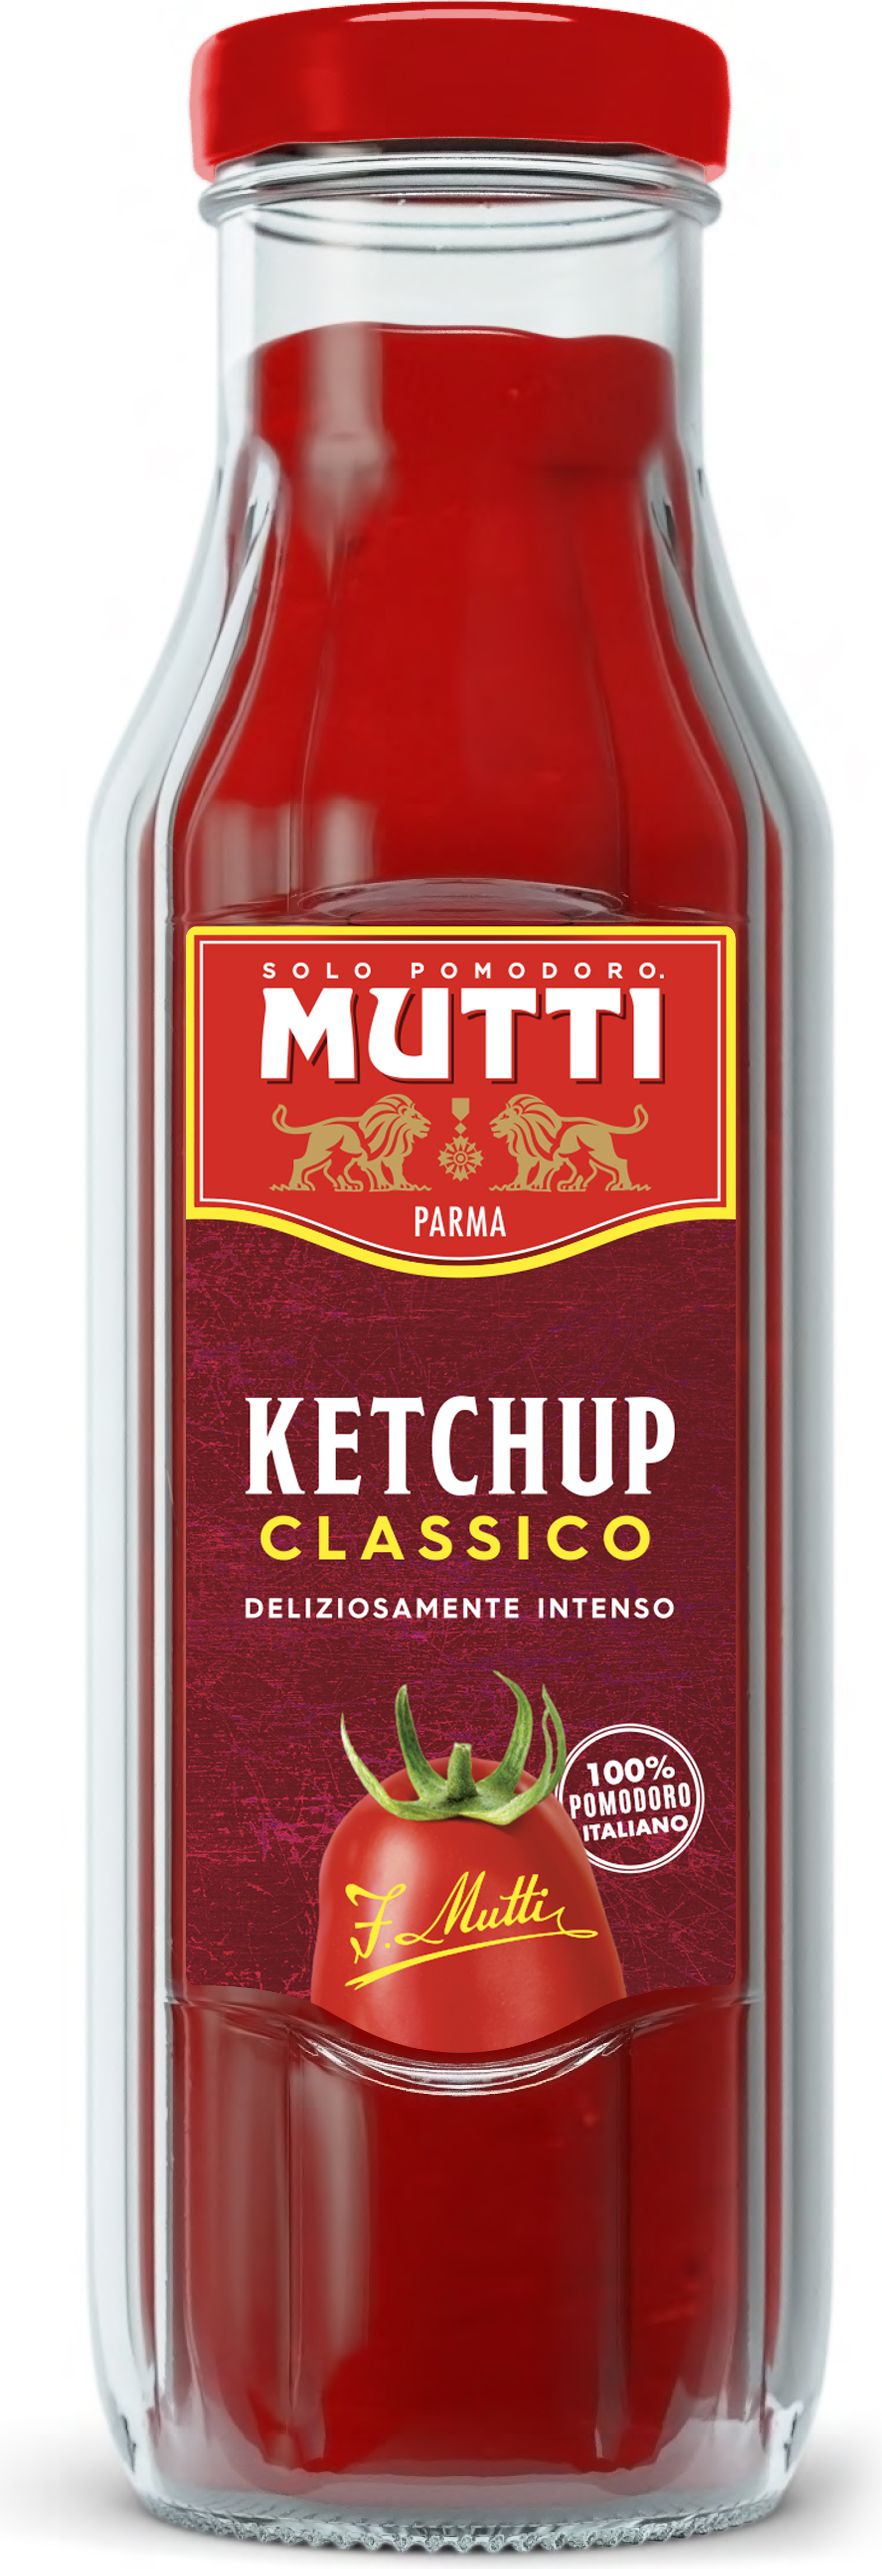 mutti томатный соус для пиццы ароматизированный 400 г купить фото 100